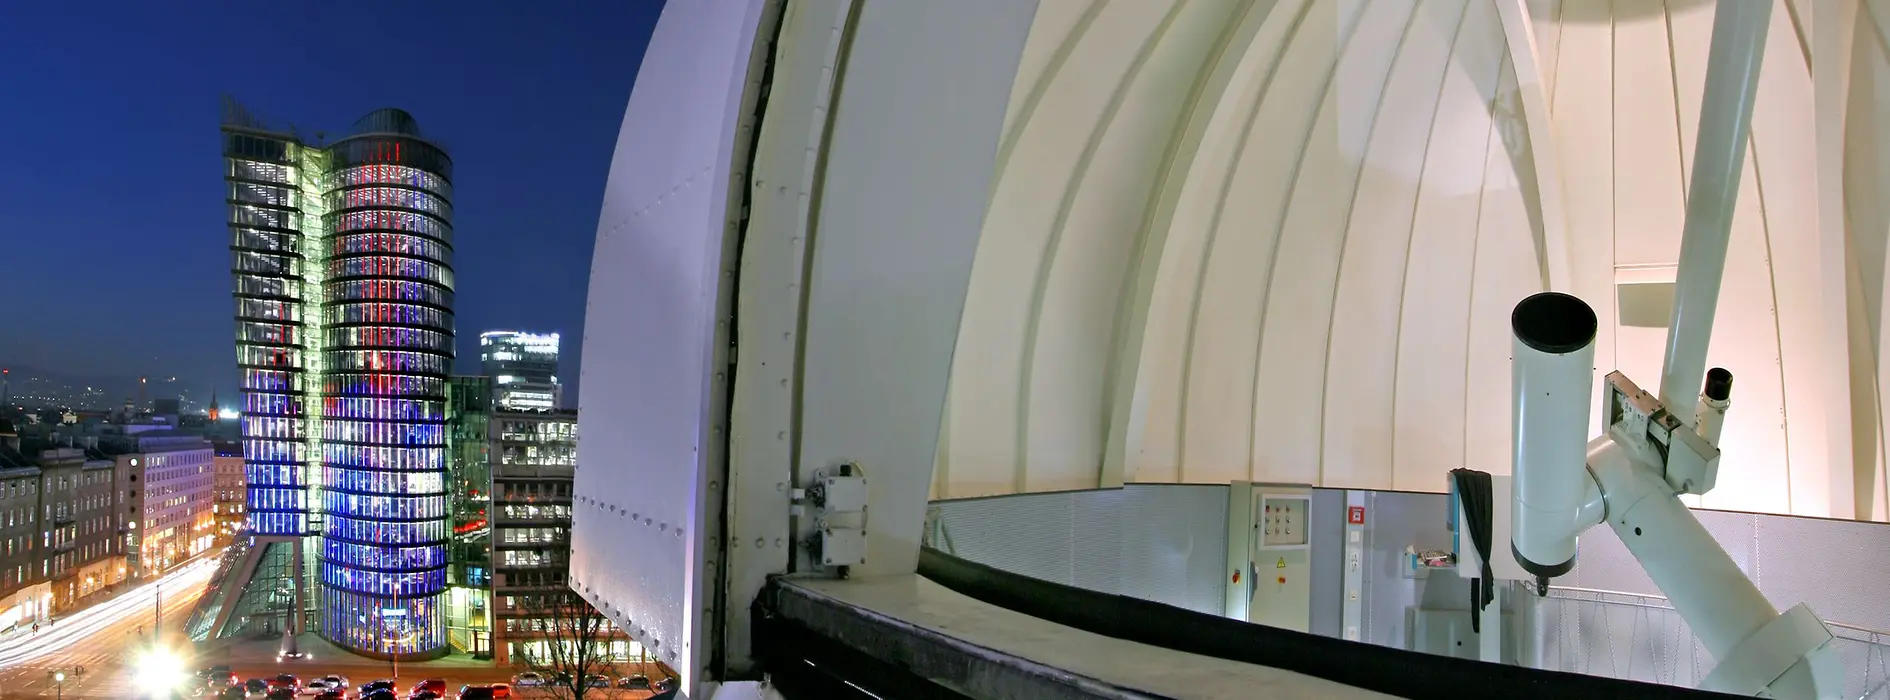 Obserwatorium Urania Sternwarte